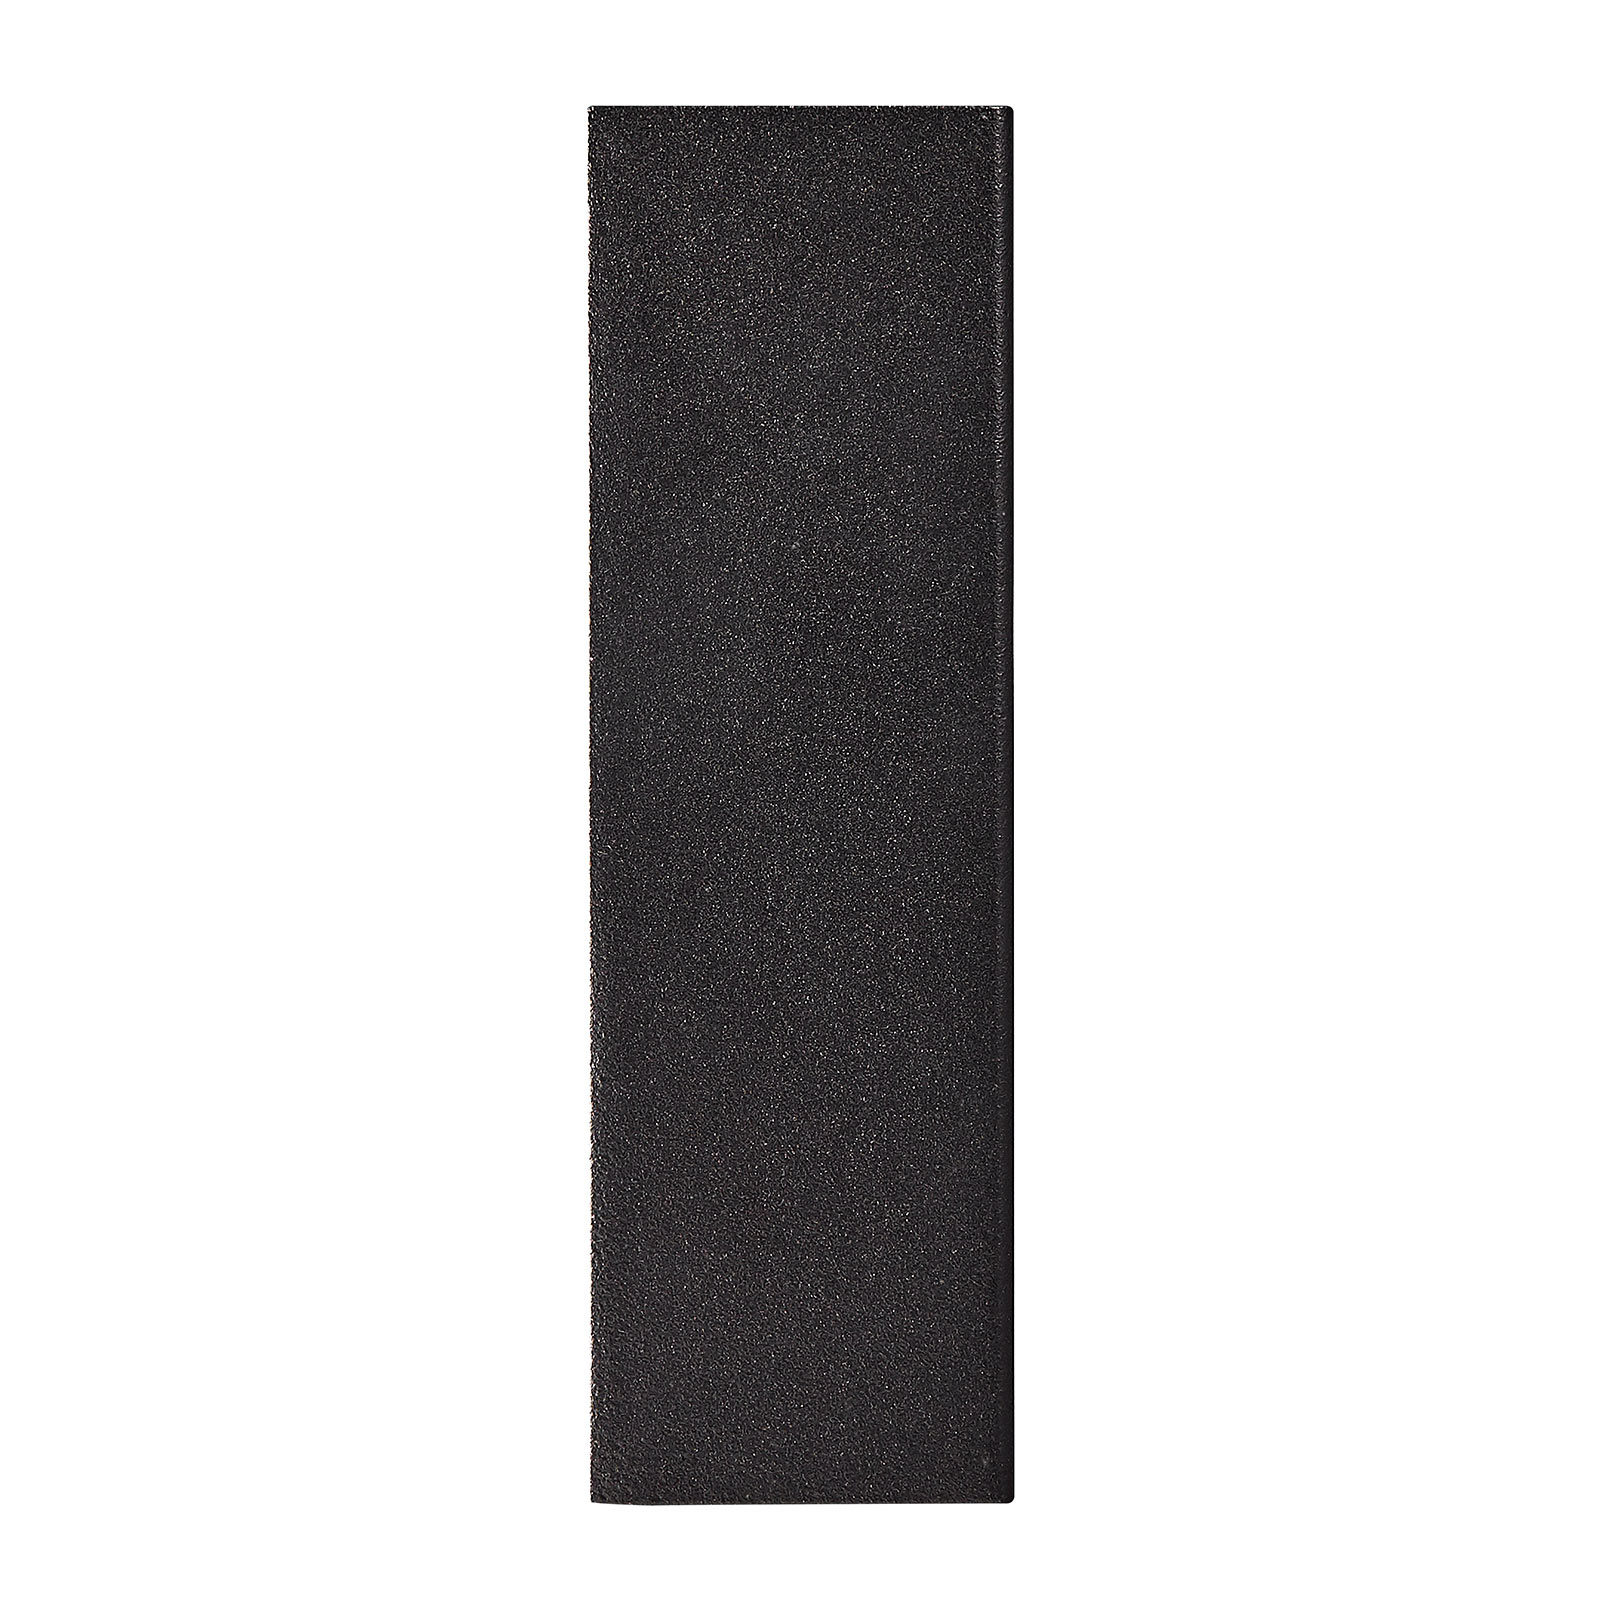 Kinkiet zewnętrzny LED Fold, 10 x 15 cm, czarny